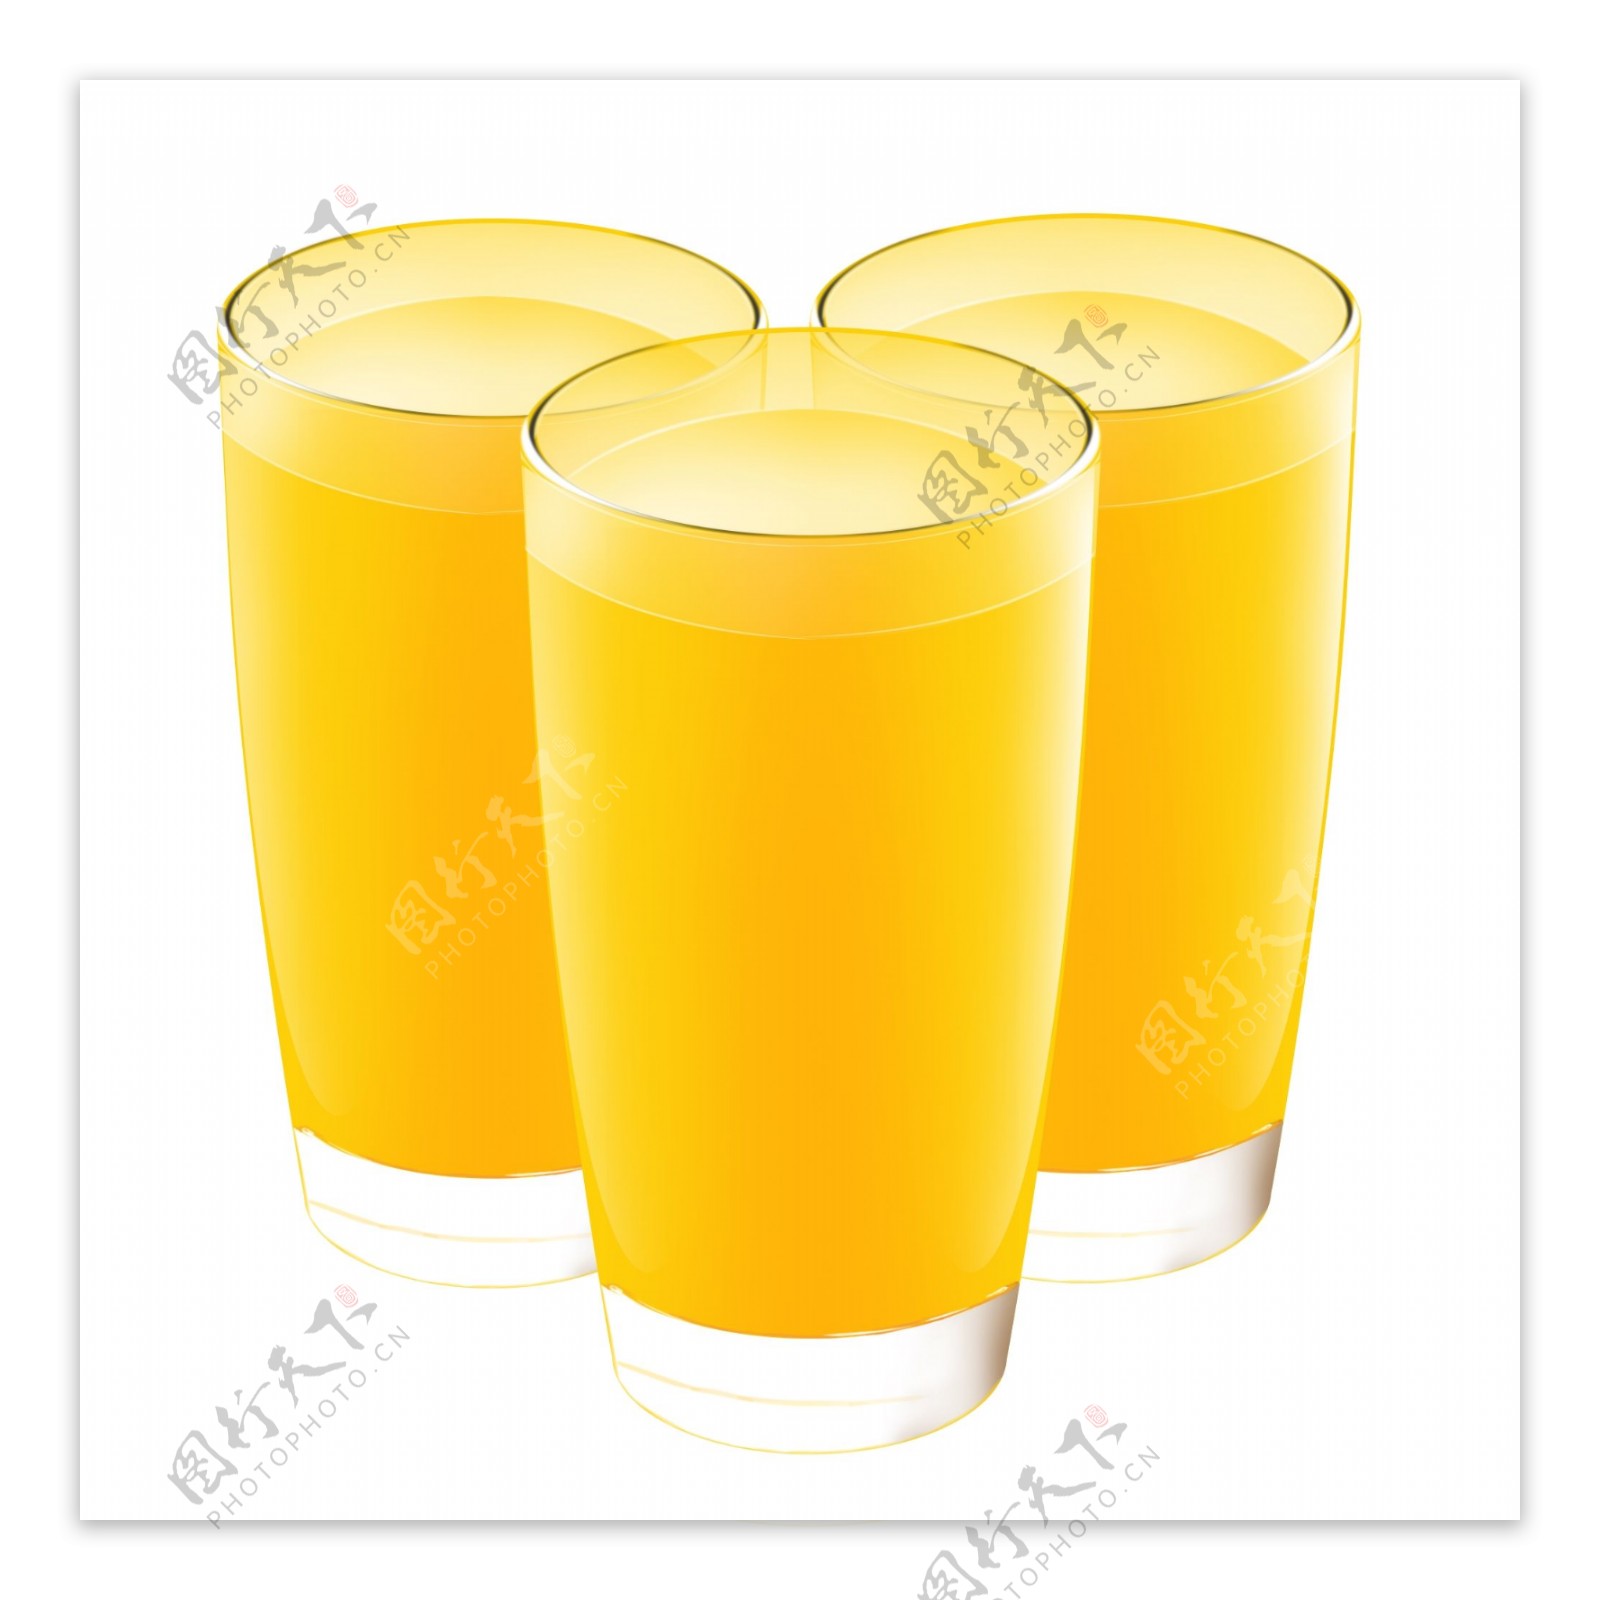 果汁橙汁长杯金黄色竖杯多杯